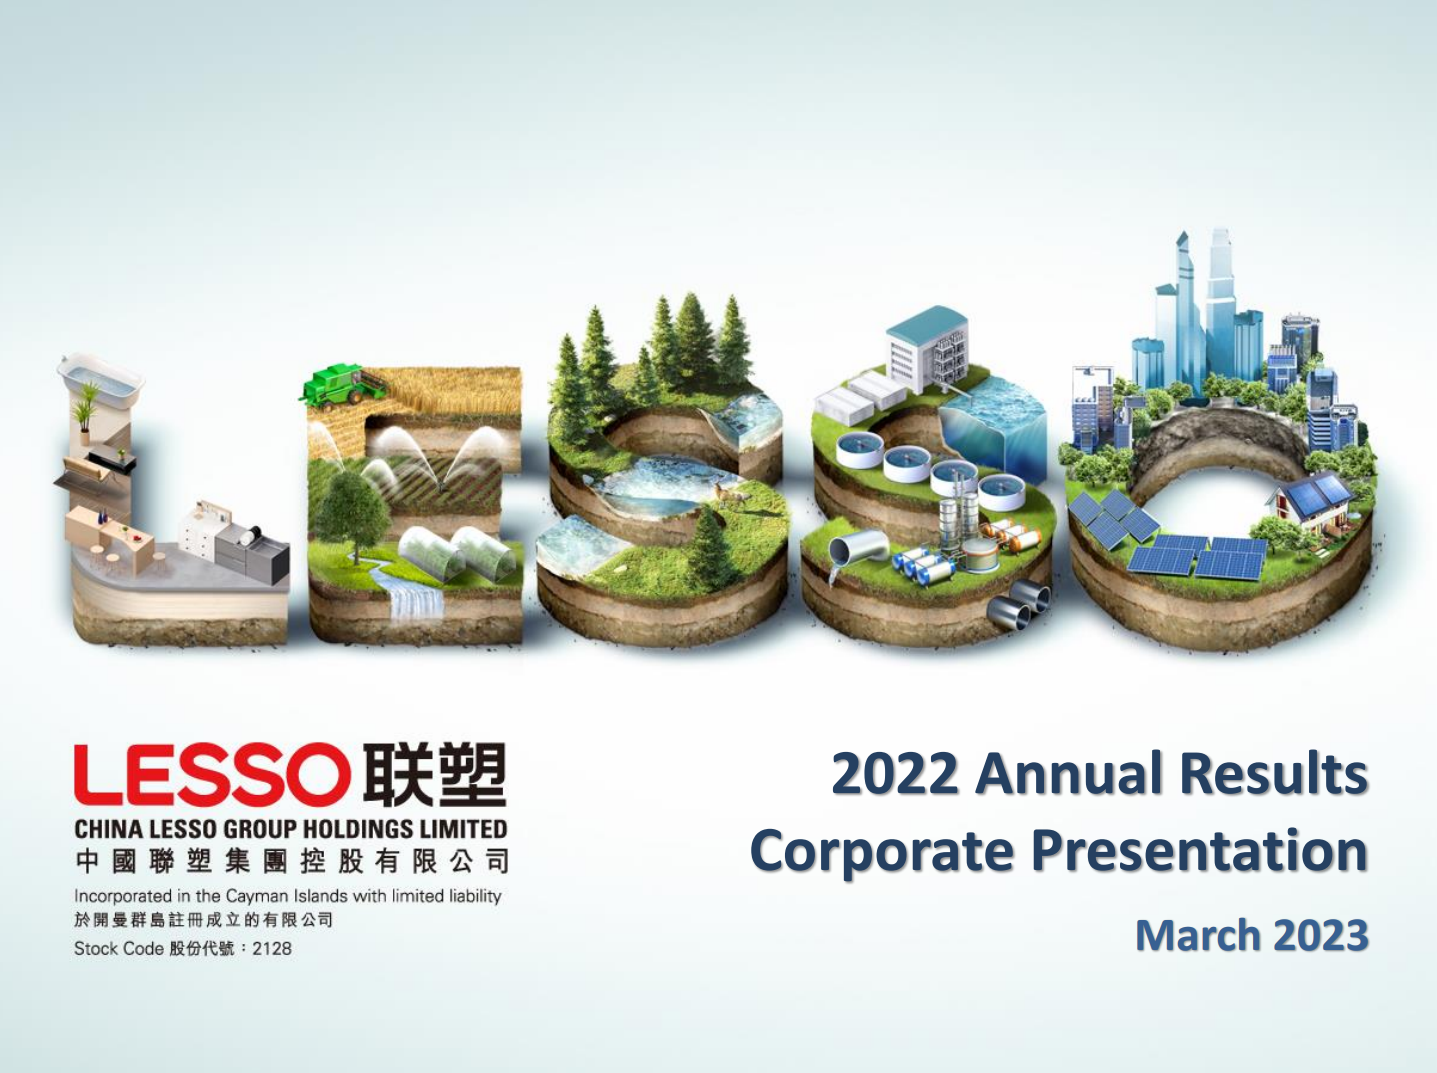 Lesso 2022 Annual Results Corporate Presentation